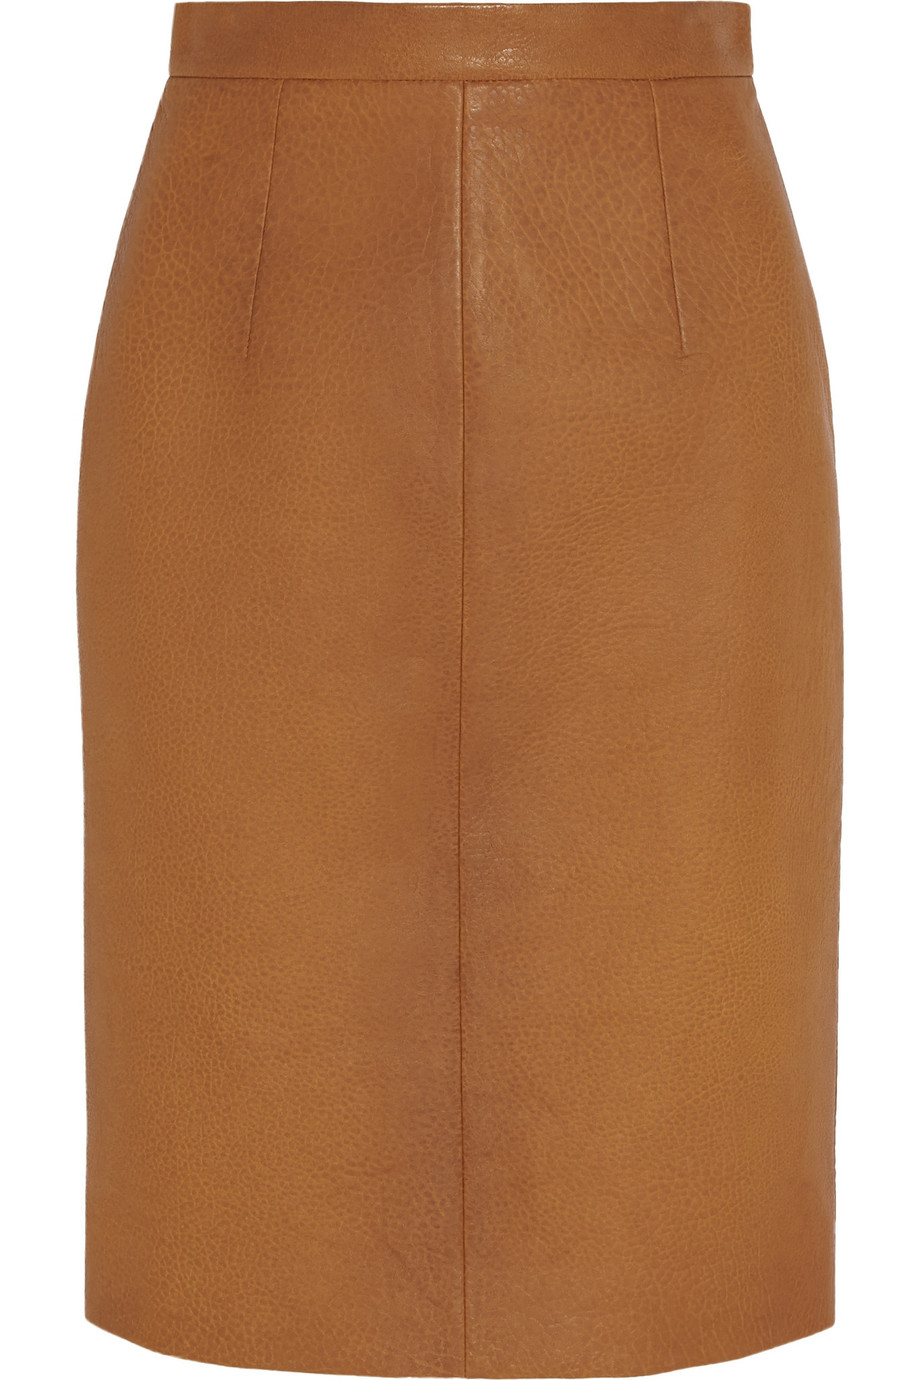 Miu Miu Textured-leather Pencil Skirt | ModeSens